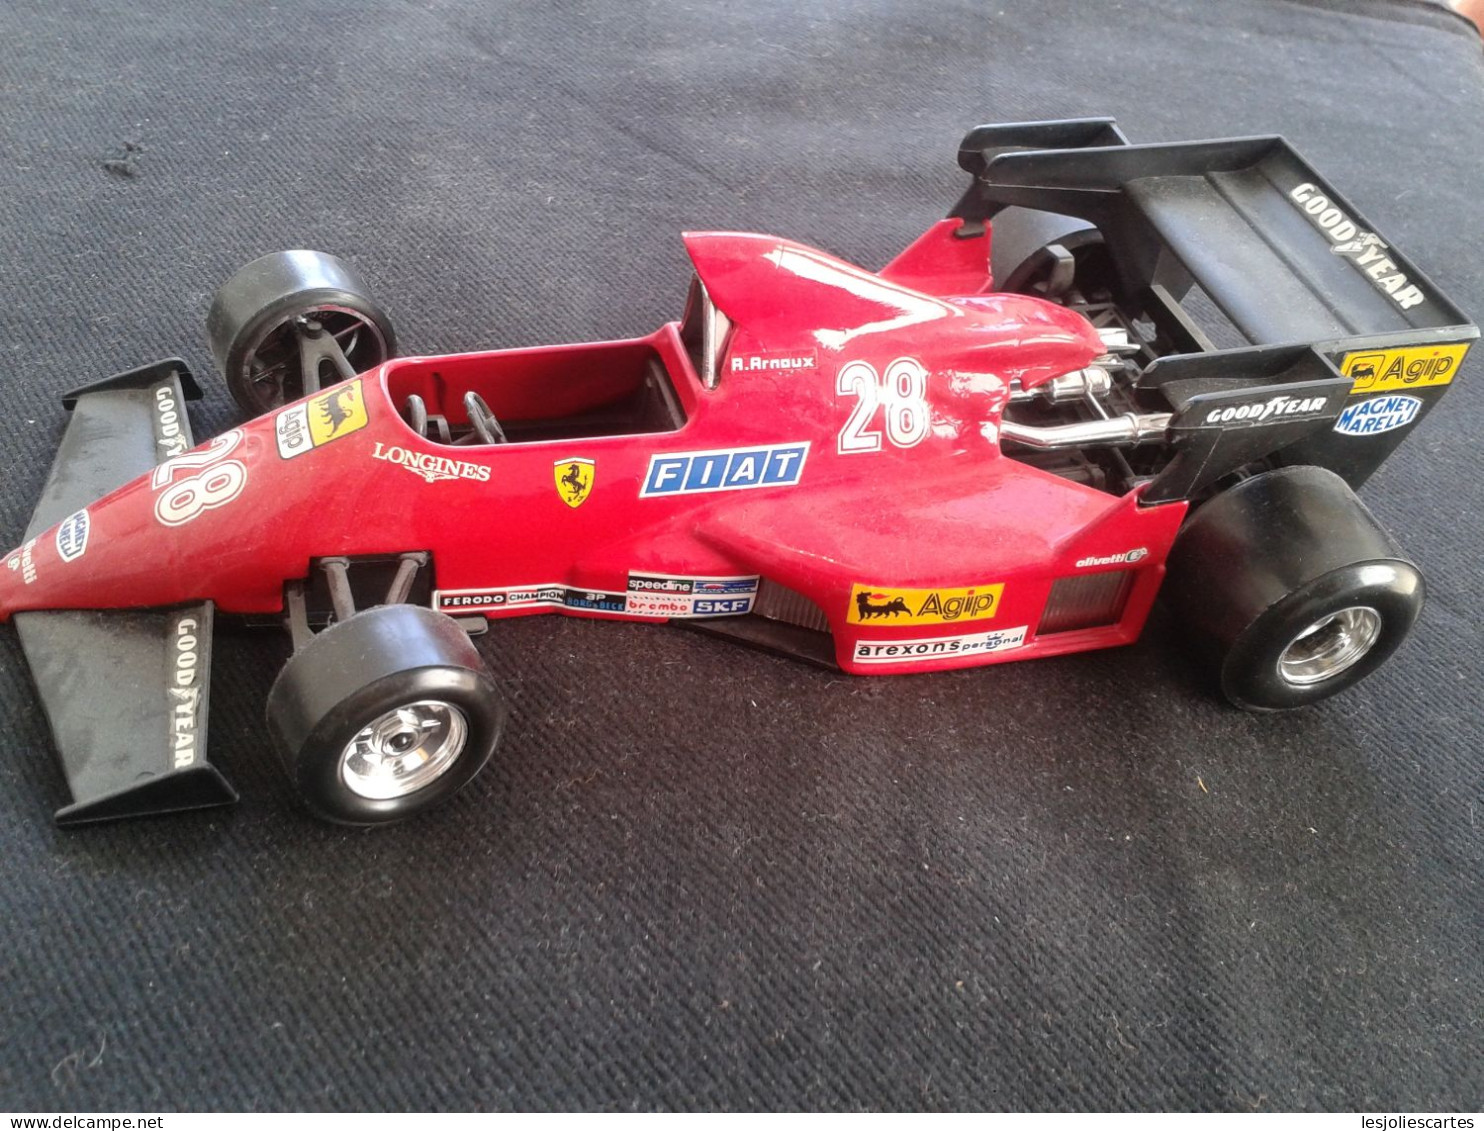 Burago 1/24 Ferrari 126c4 Modifiee Rene Arnoux F1 Formule 1 Racing 1:24 Bburago - Burago